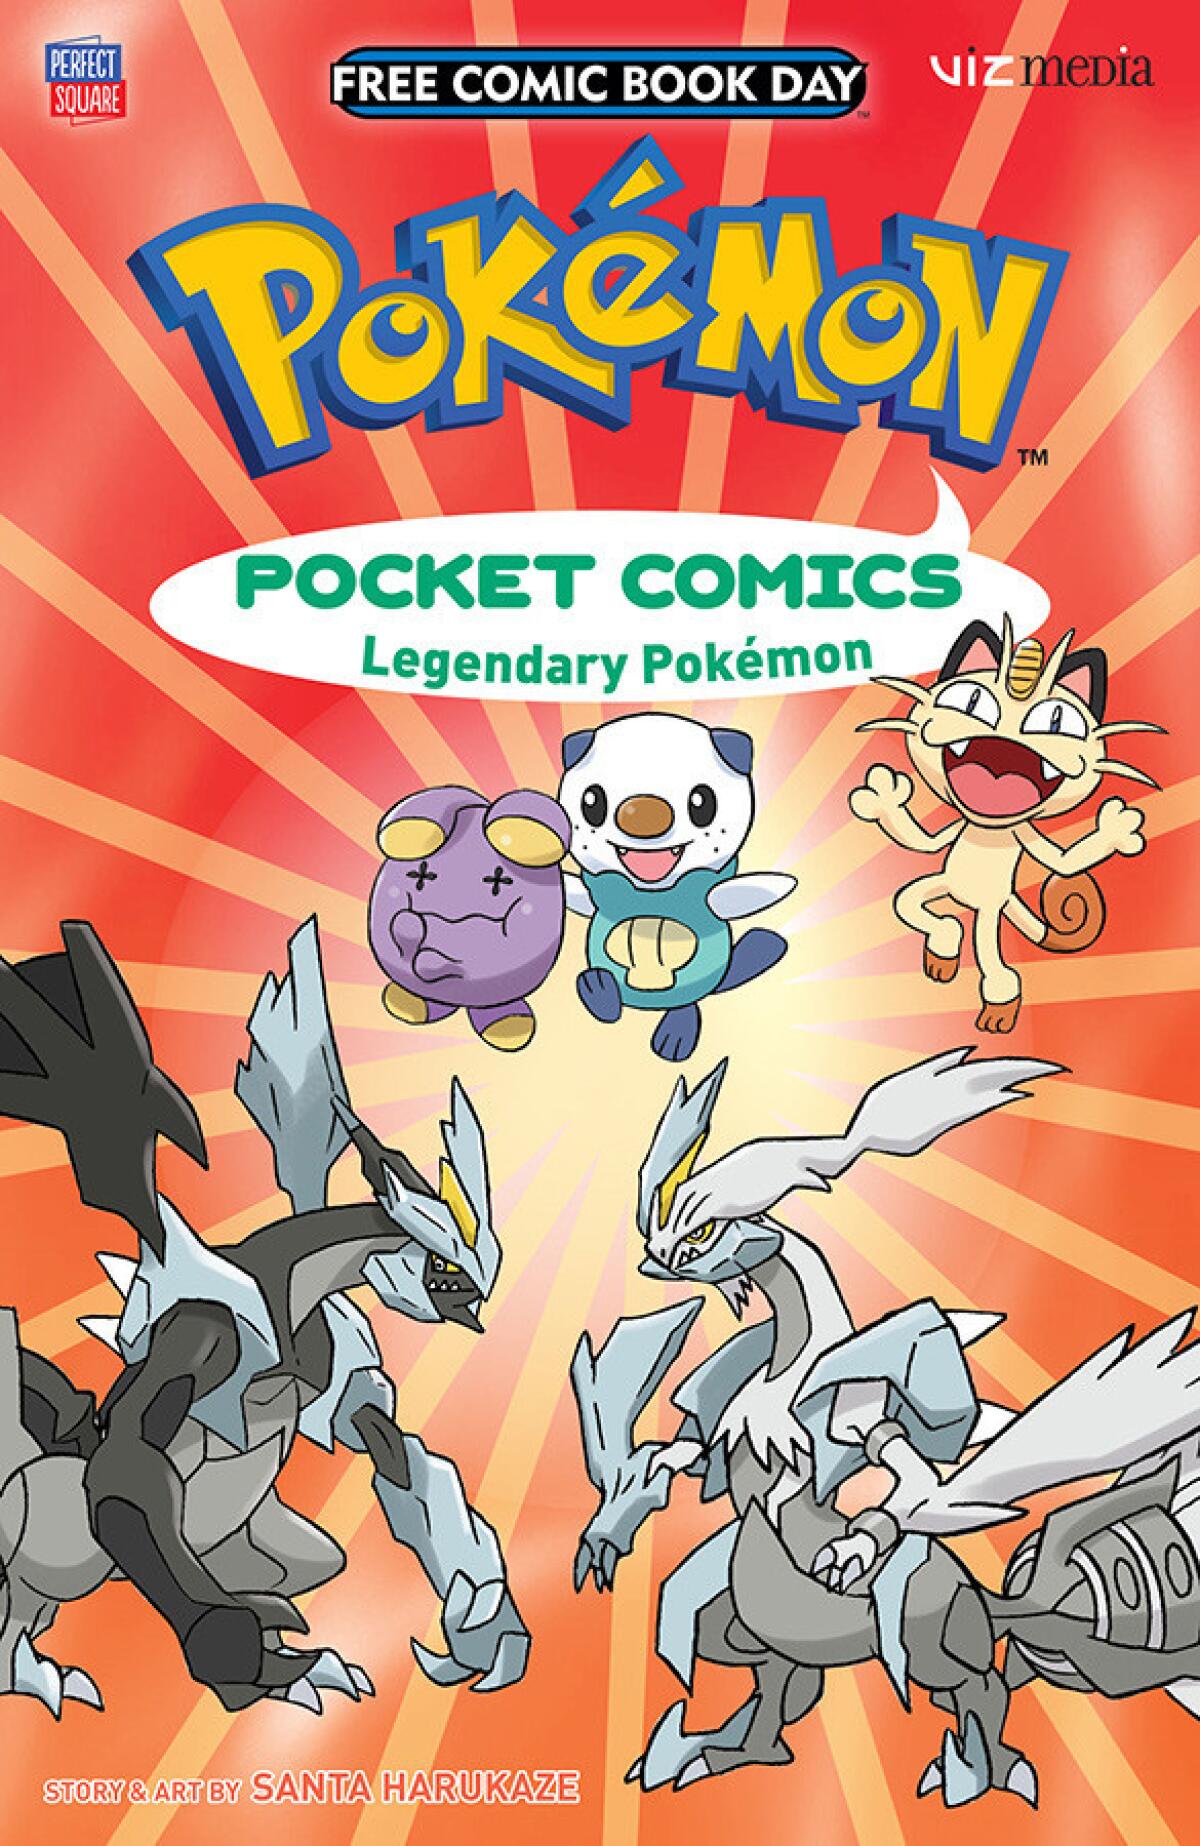 "Pokemon" Pocket Comics, FCBD edition. (Viz Media)